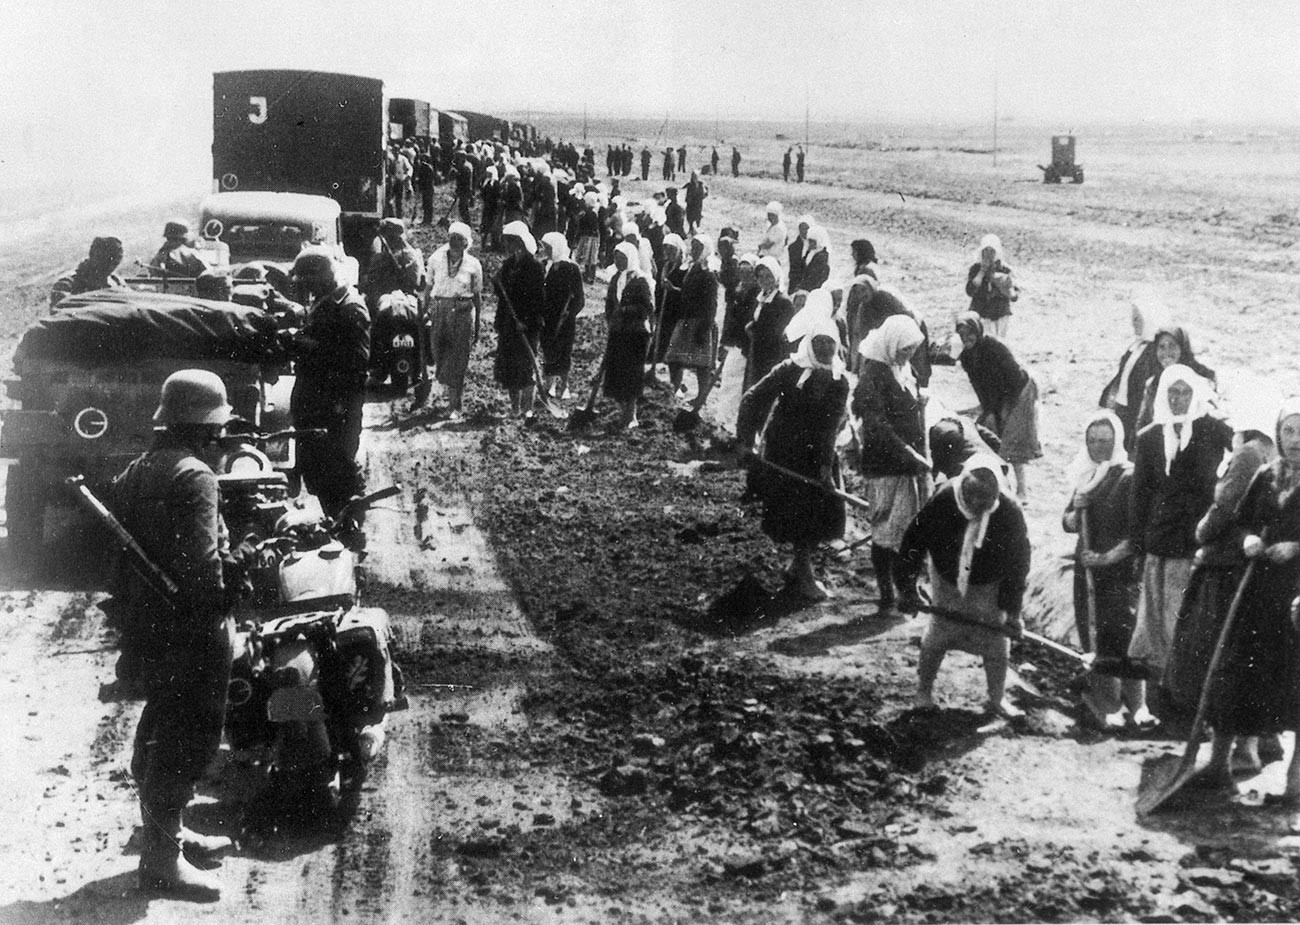 Sovjetski državljani med prisilnim delom pod nadzorom nemških vojakov